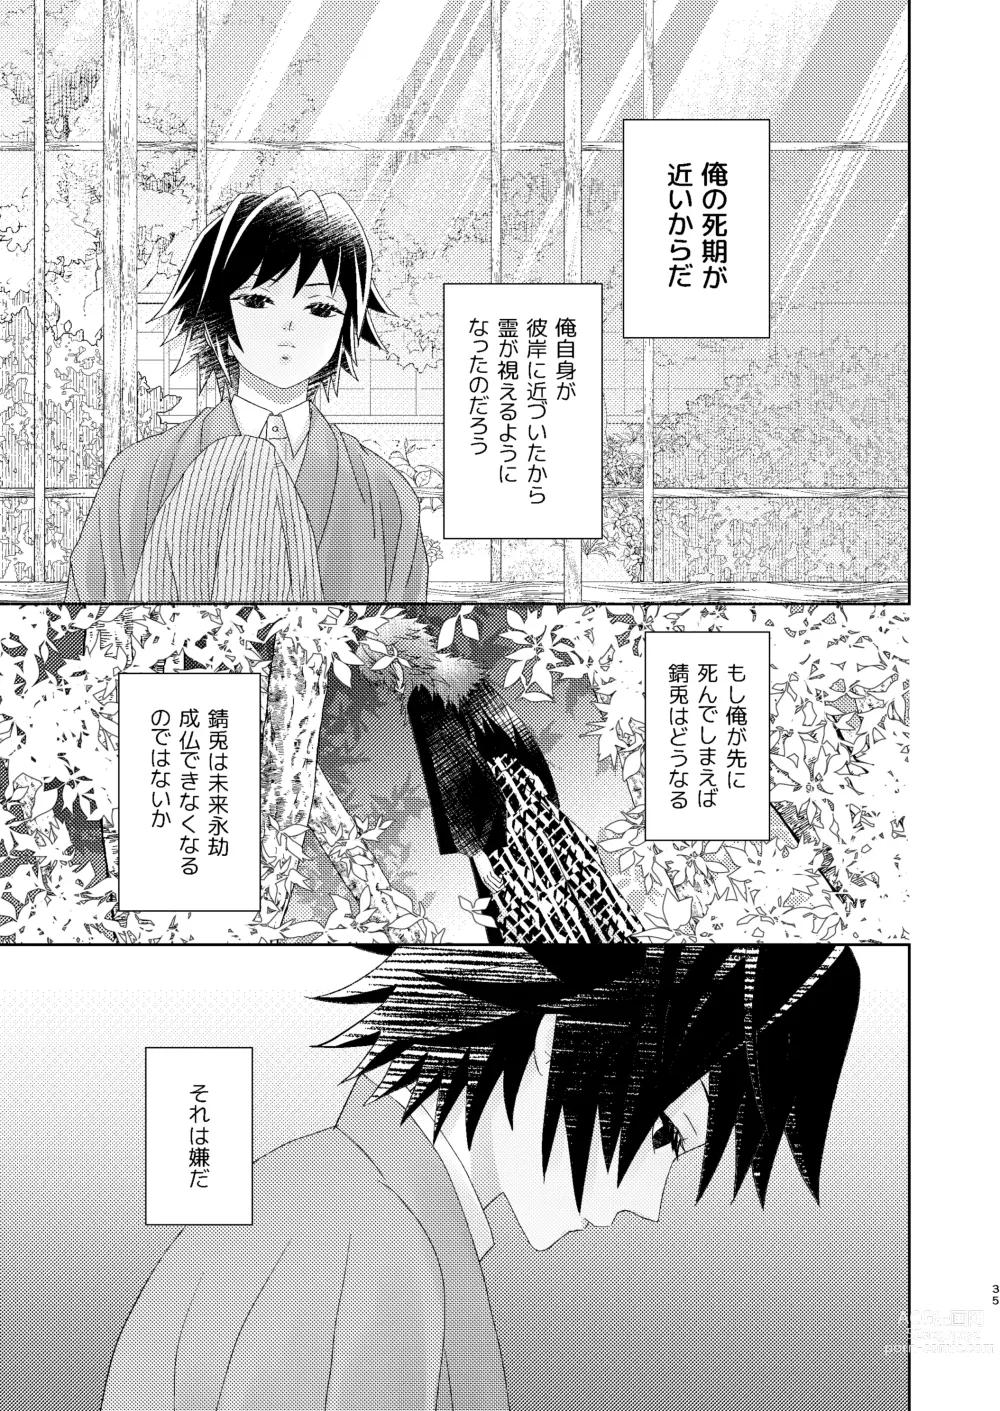 Page 34 of doujinshi Yuurei Kareshi no Koiwazurai